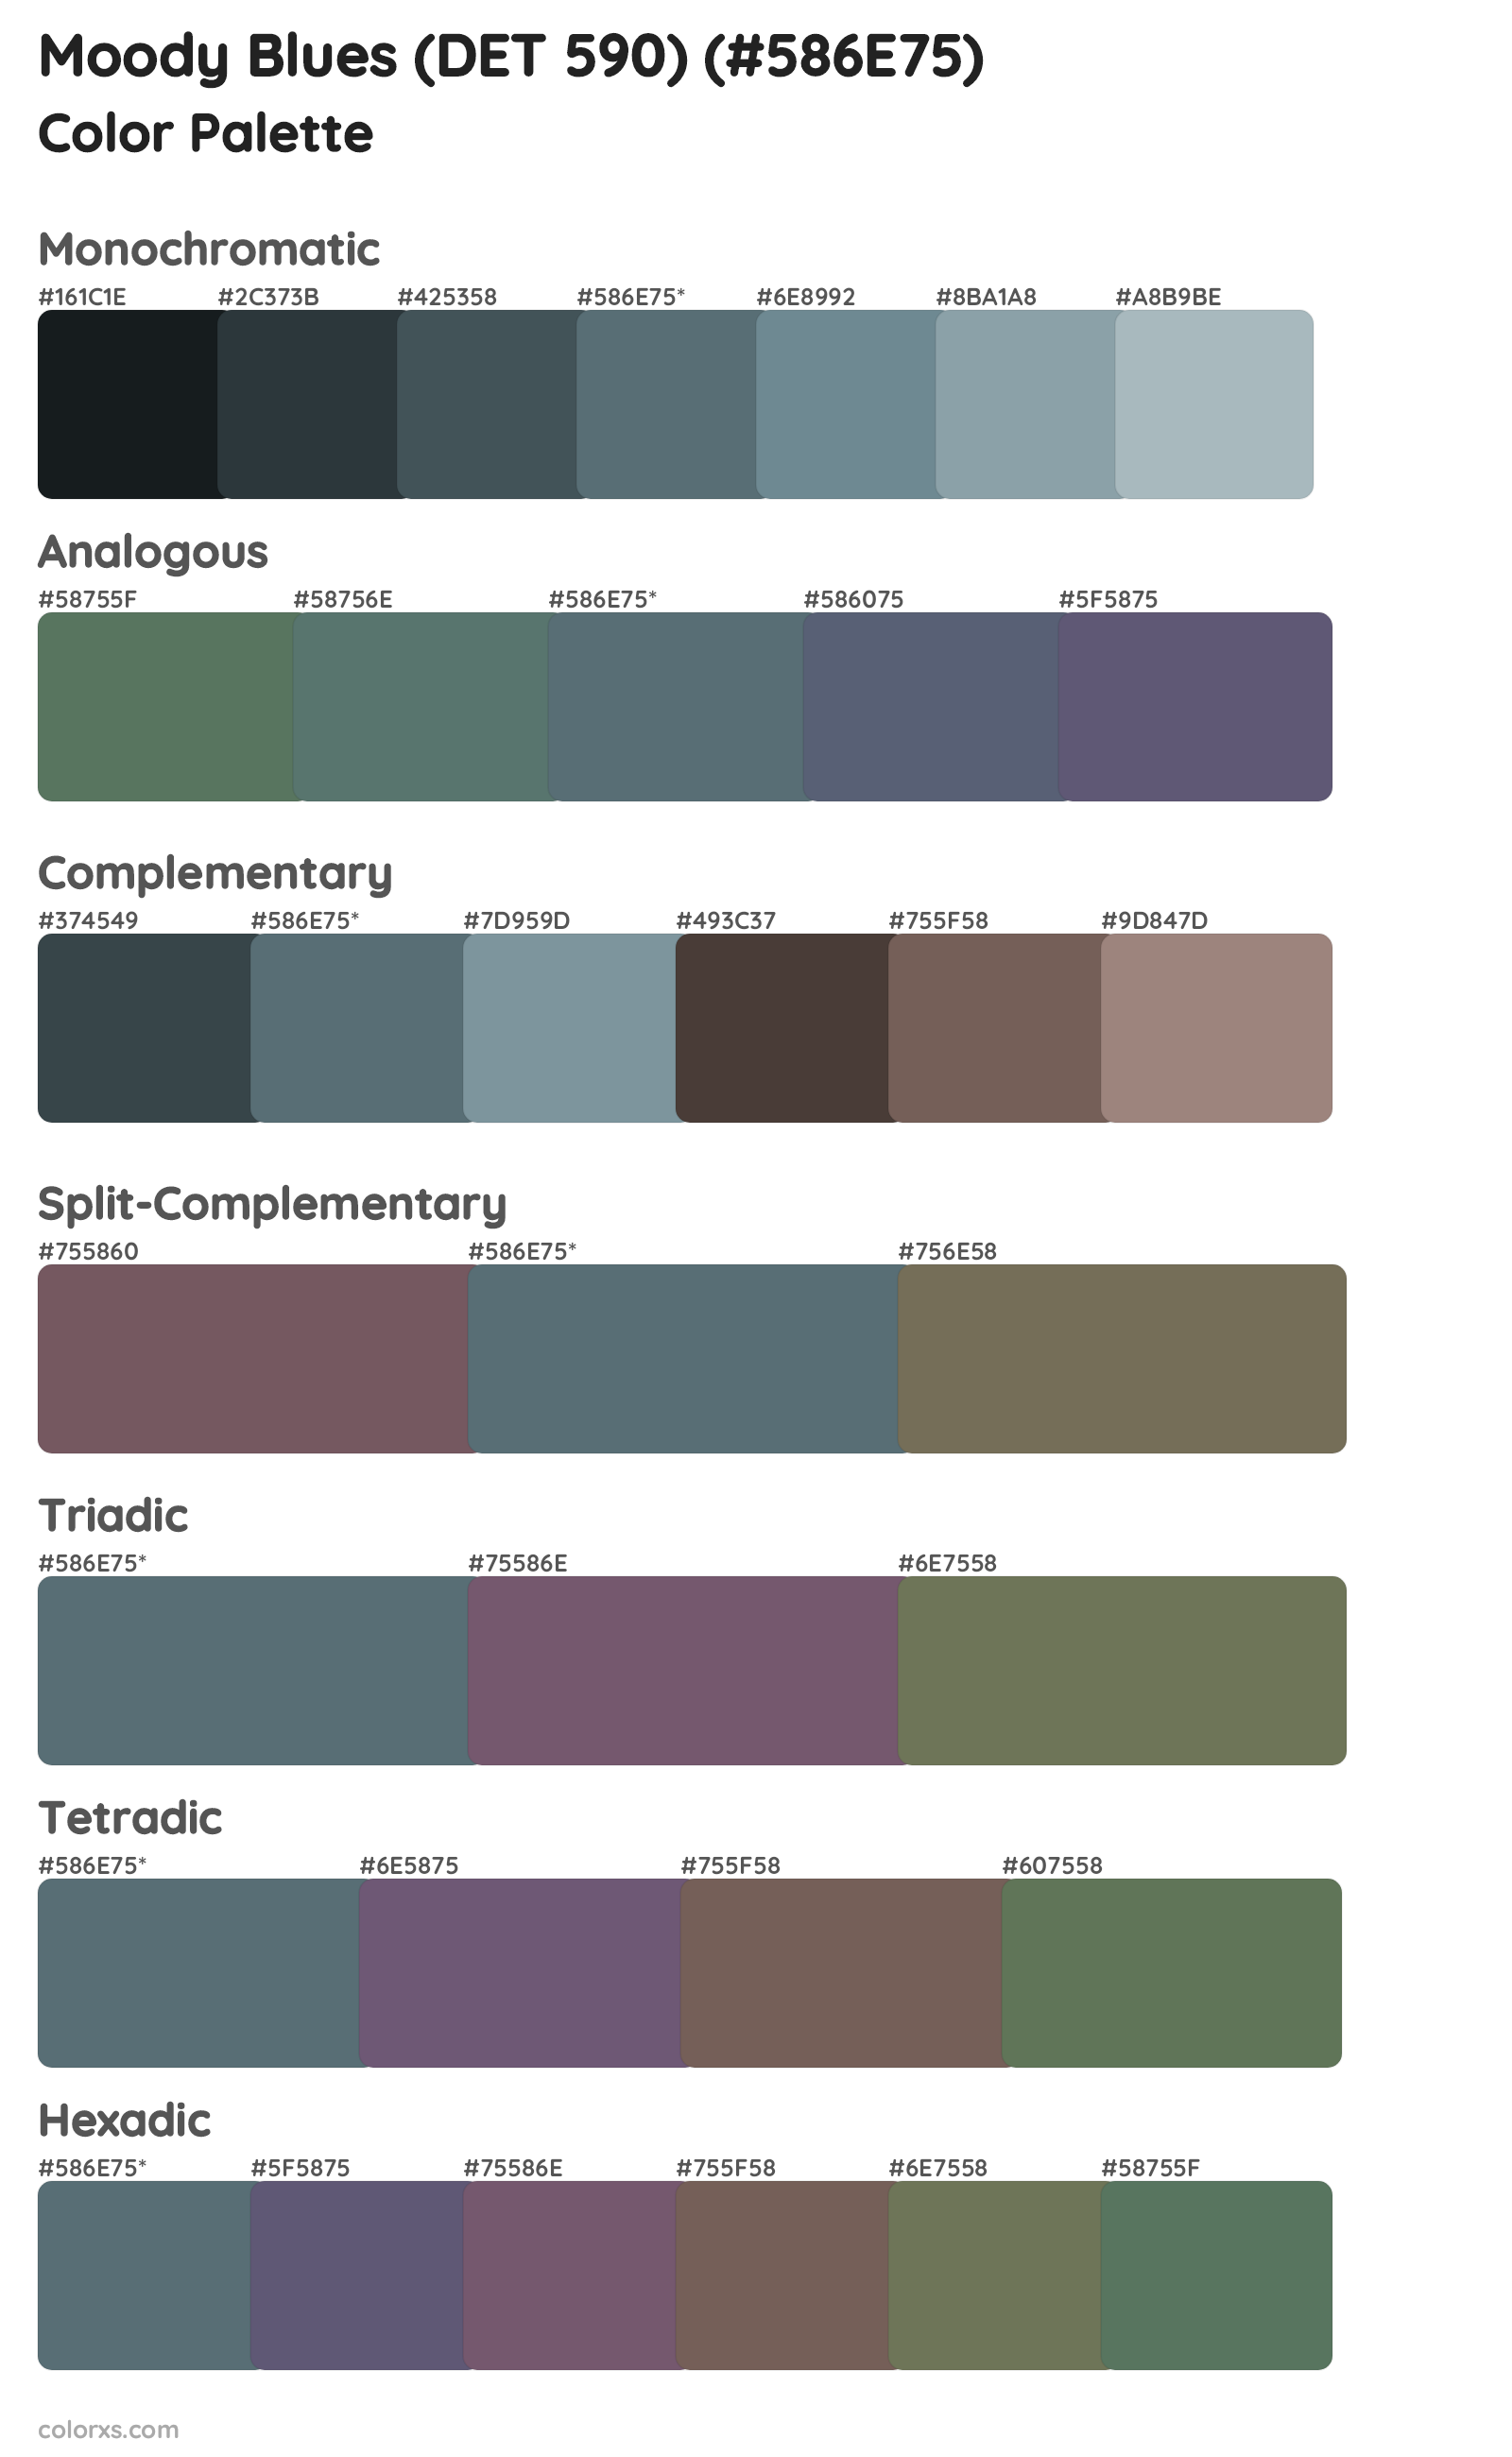 Moody Blues (DET 590) Color Scheme Palettes